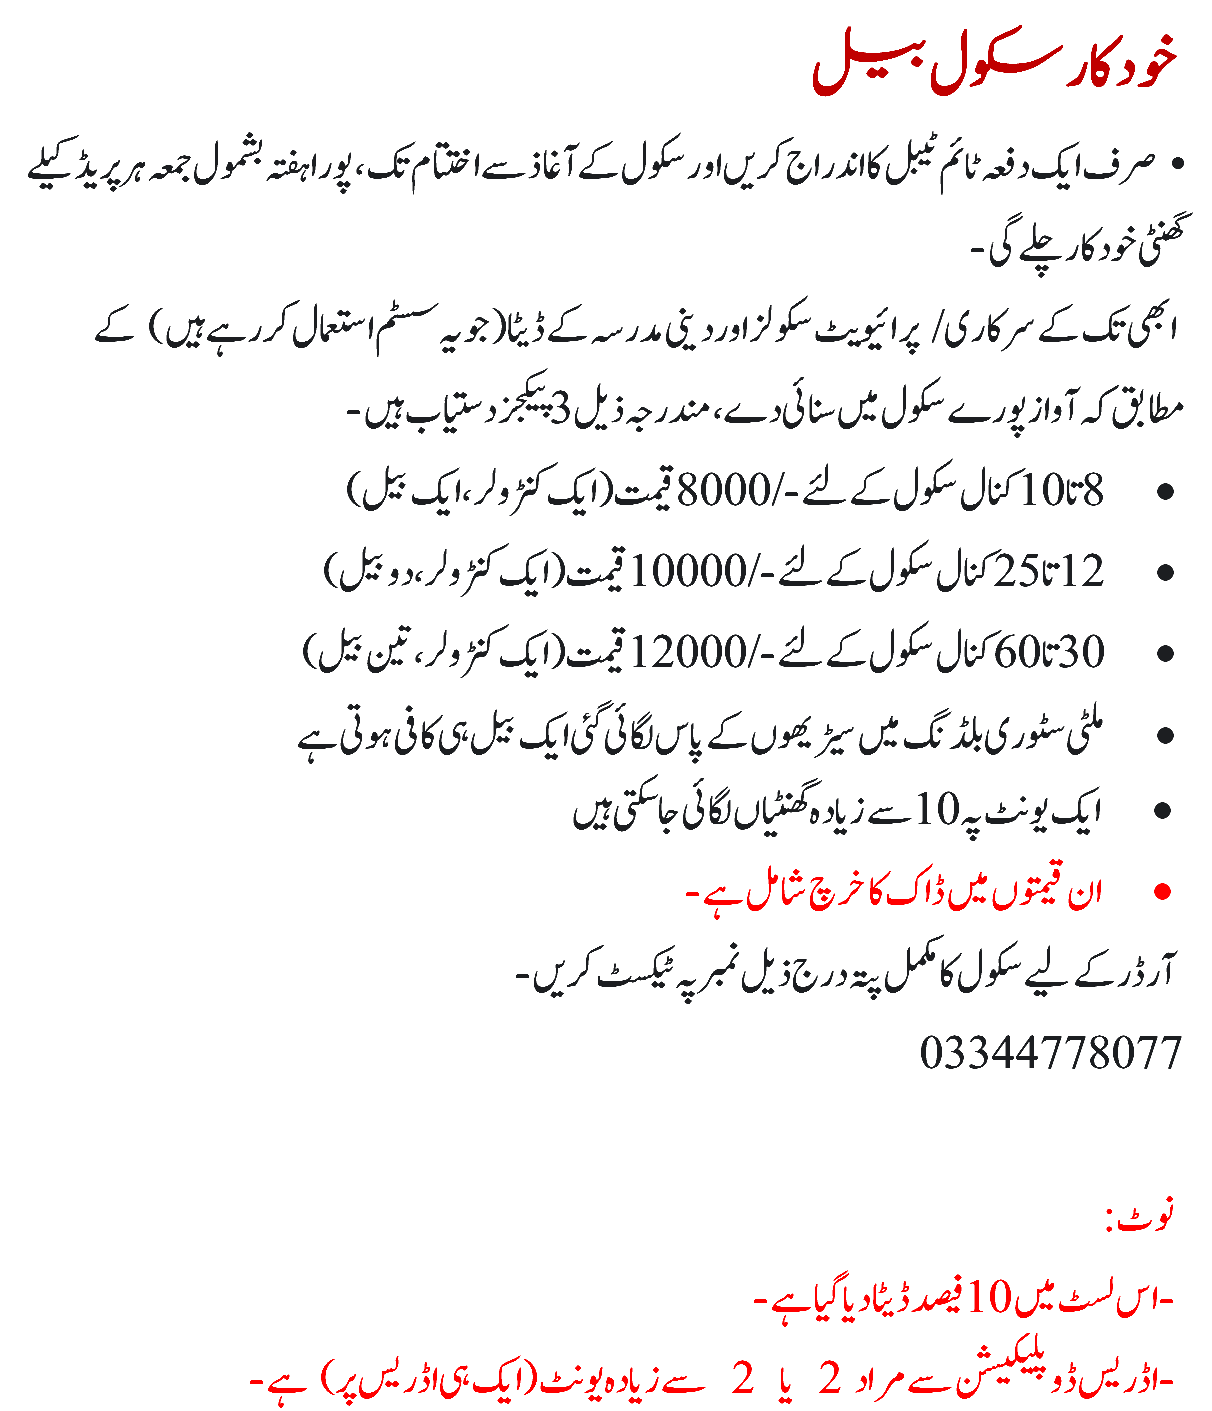 Haqeeqat Free Download Pdf Hindi Torrent